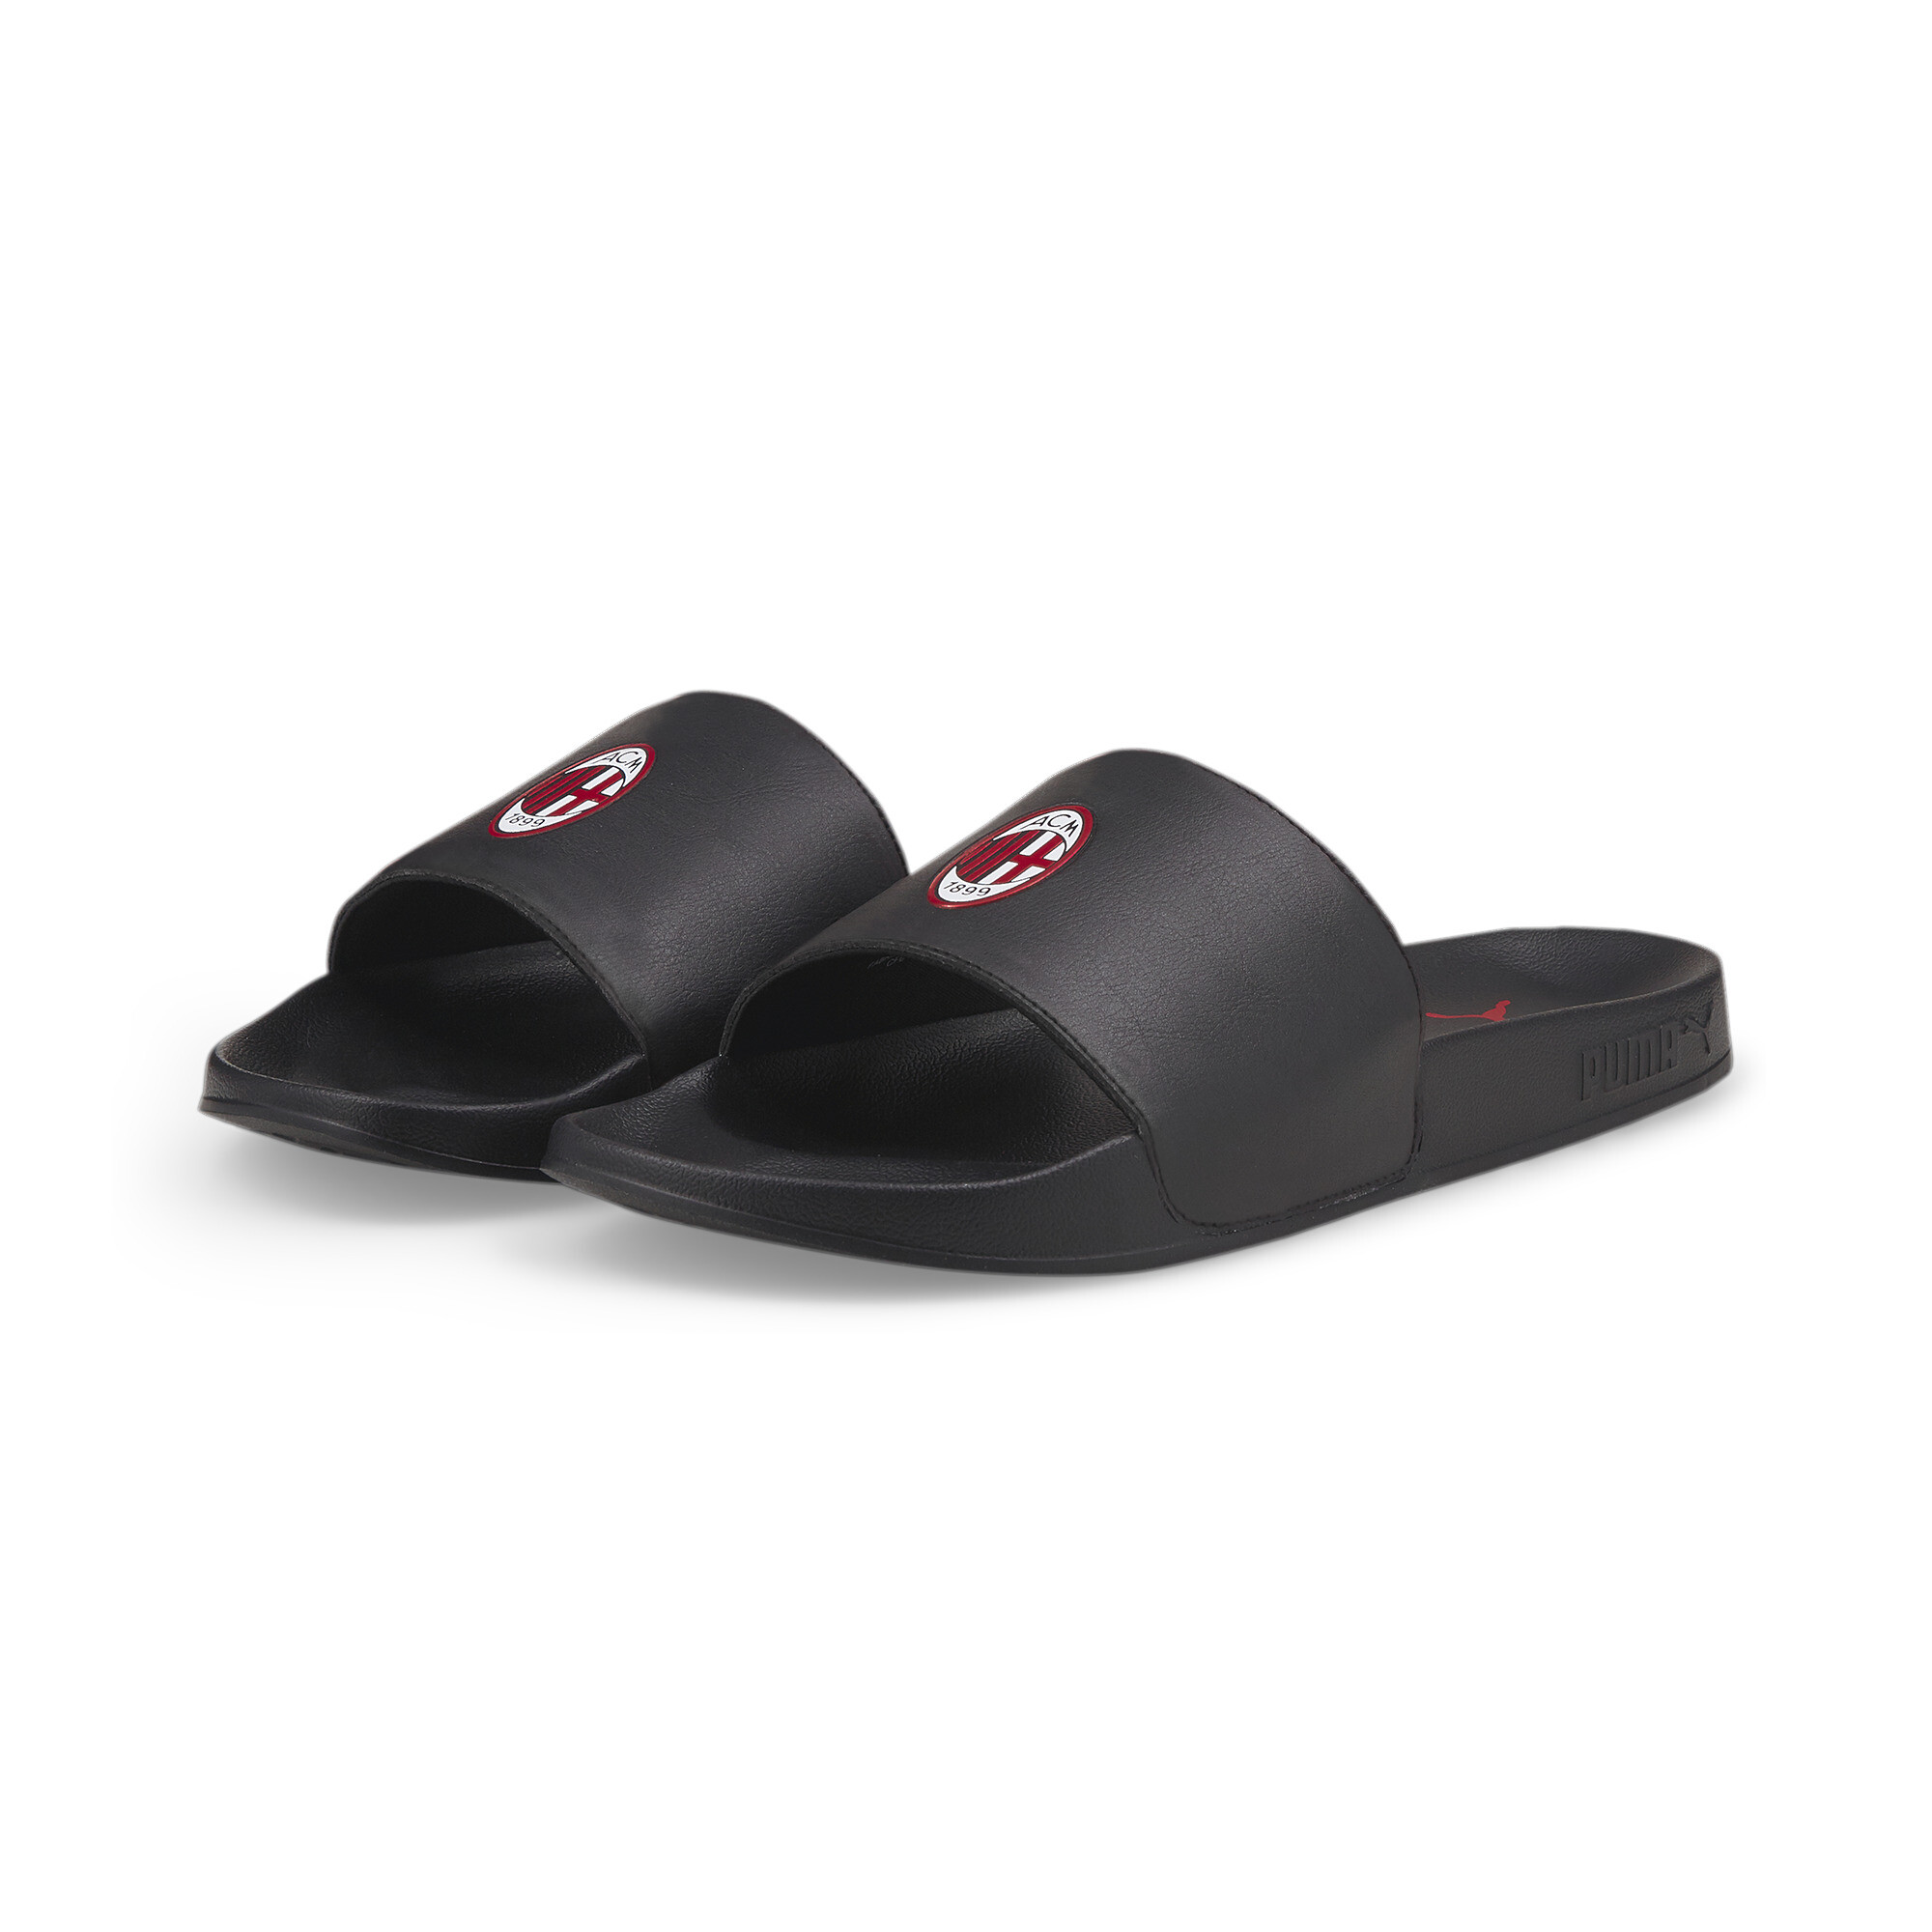 Men's PUMA ACM Leadcat 2.0 Sandals In Black, Size EU 37